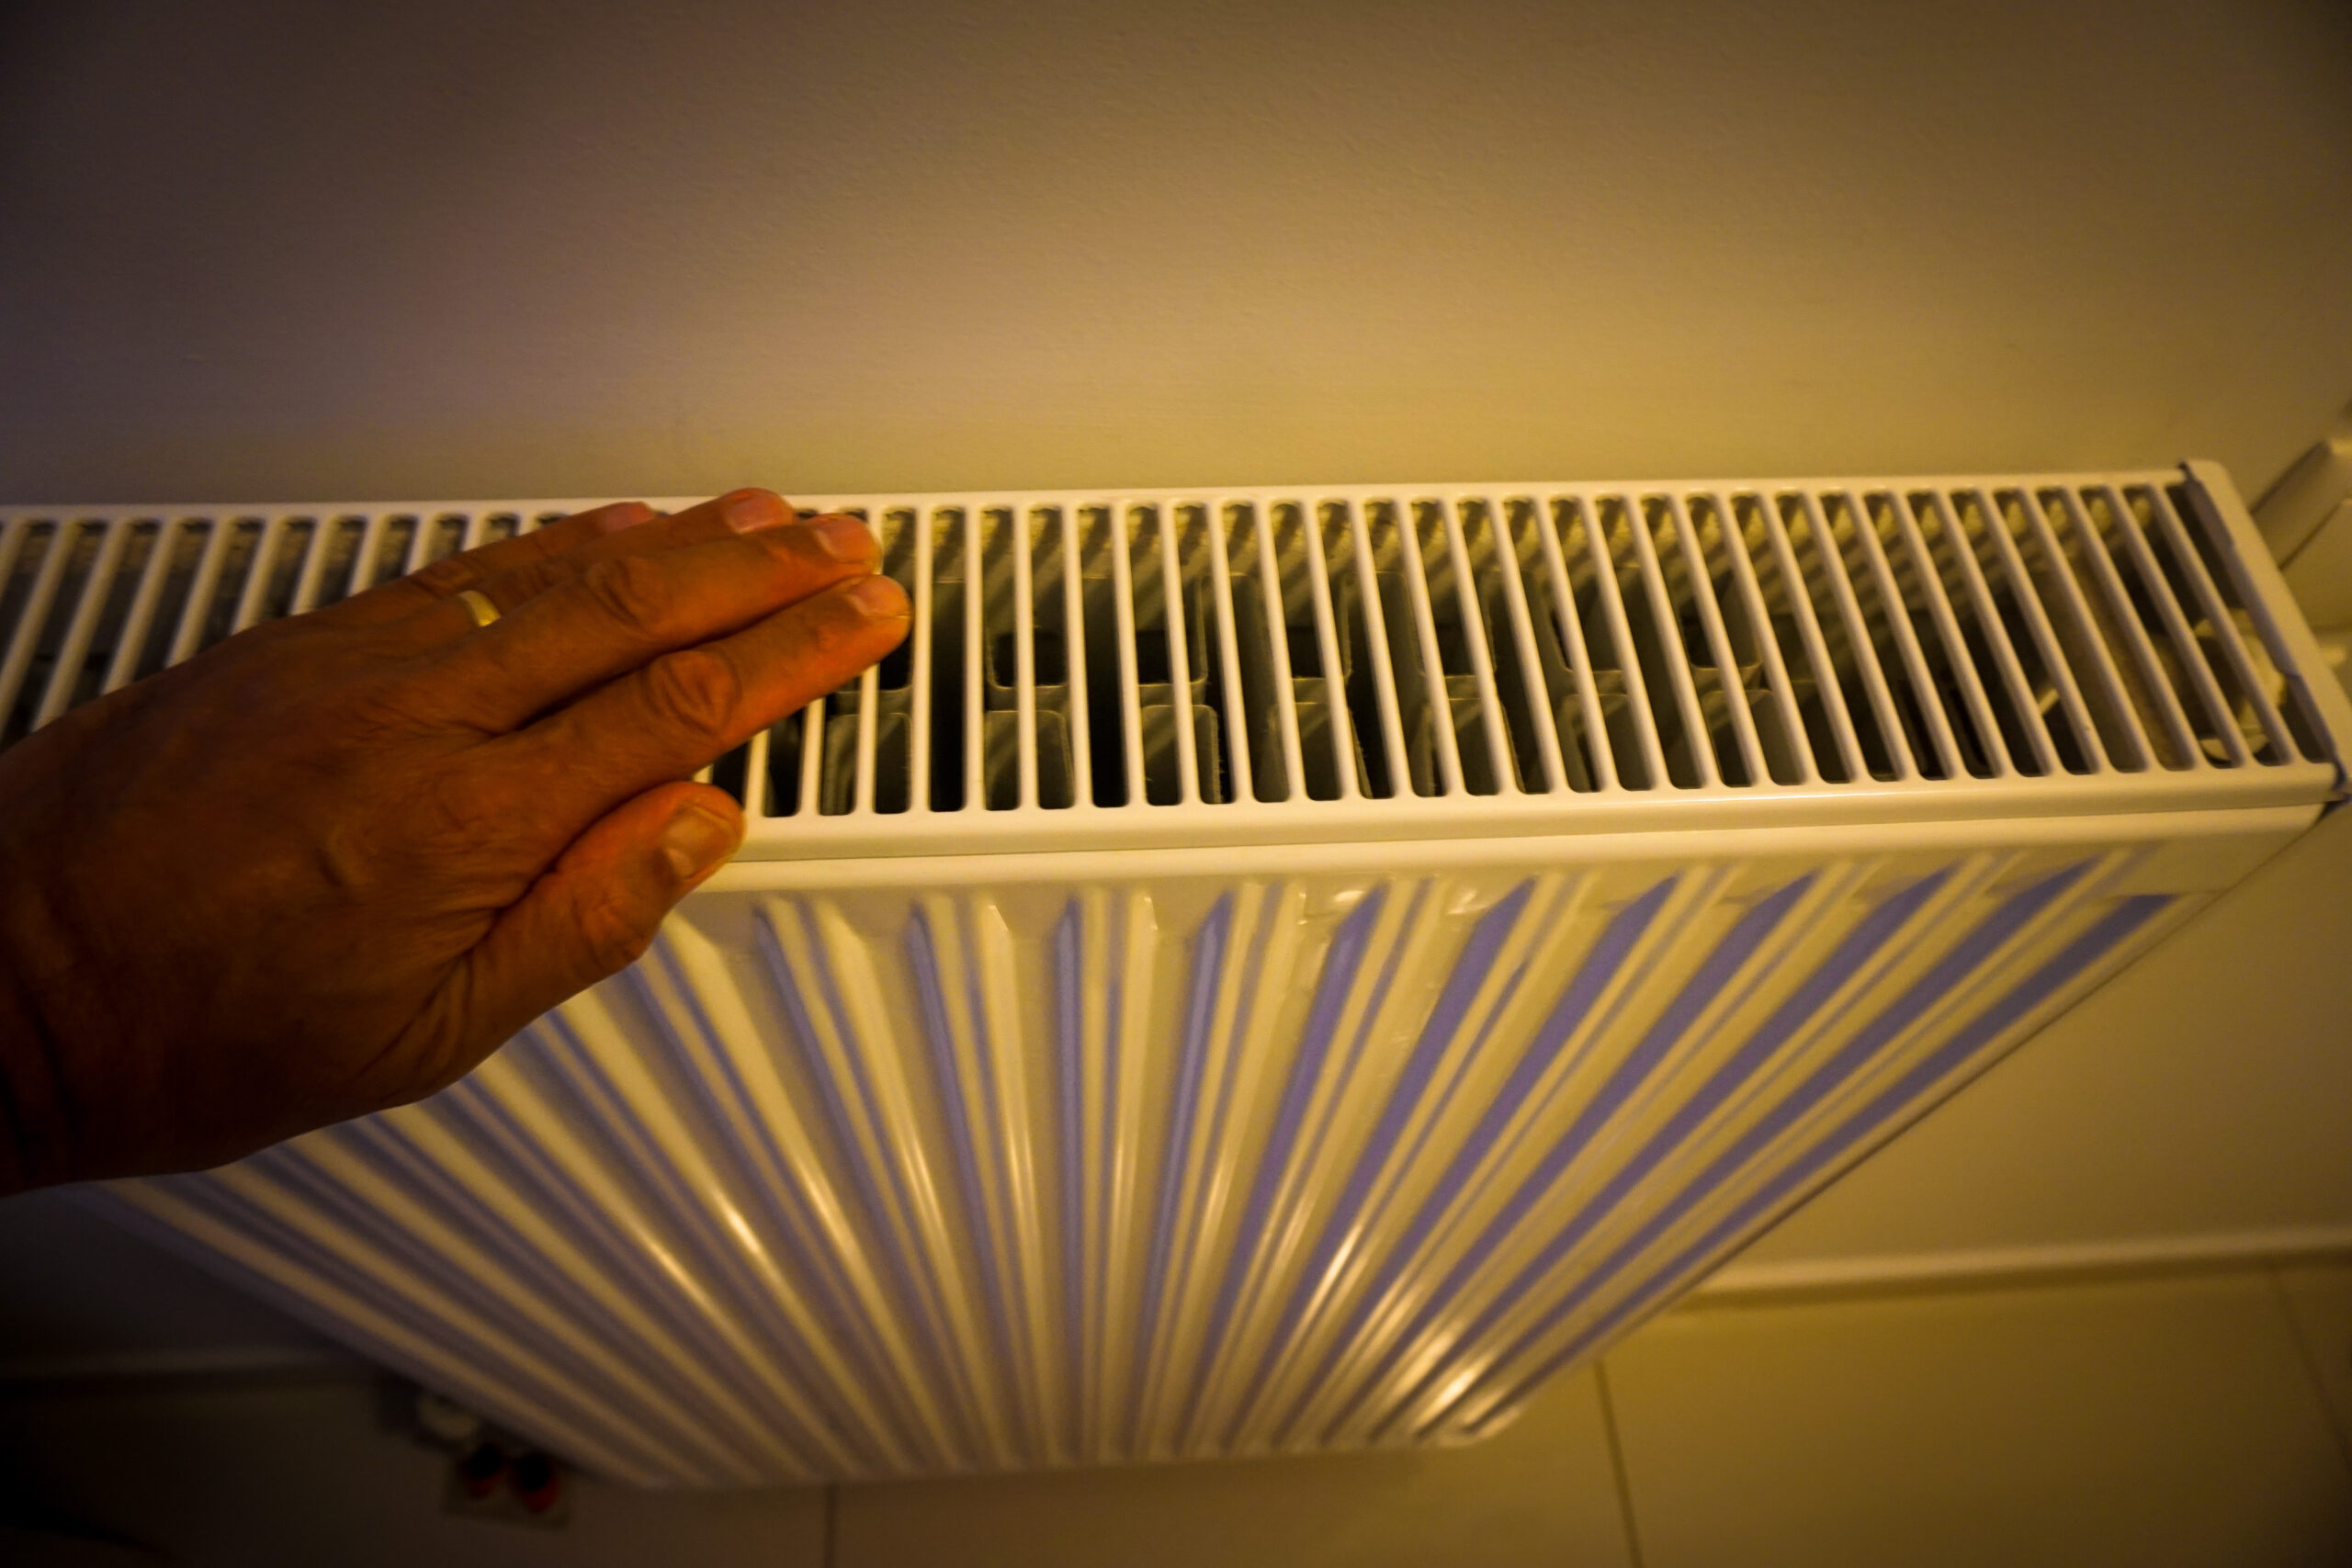 Επίδομα θέρμανσης με ηλεκτρικό ρεύμα: Ως τις 19 Ιανουαρίου οι αιτήσεις – Αναλυτικά η διαδικασία και τα κριτήρια